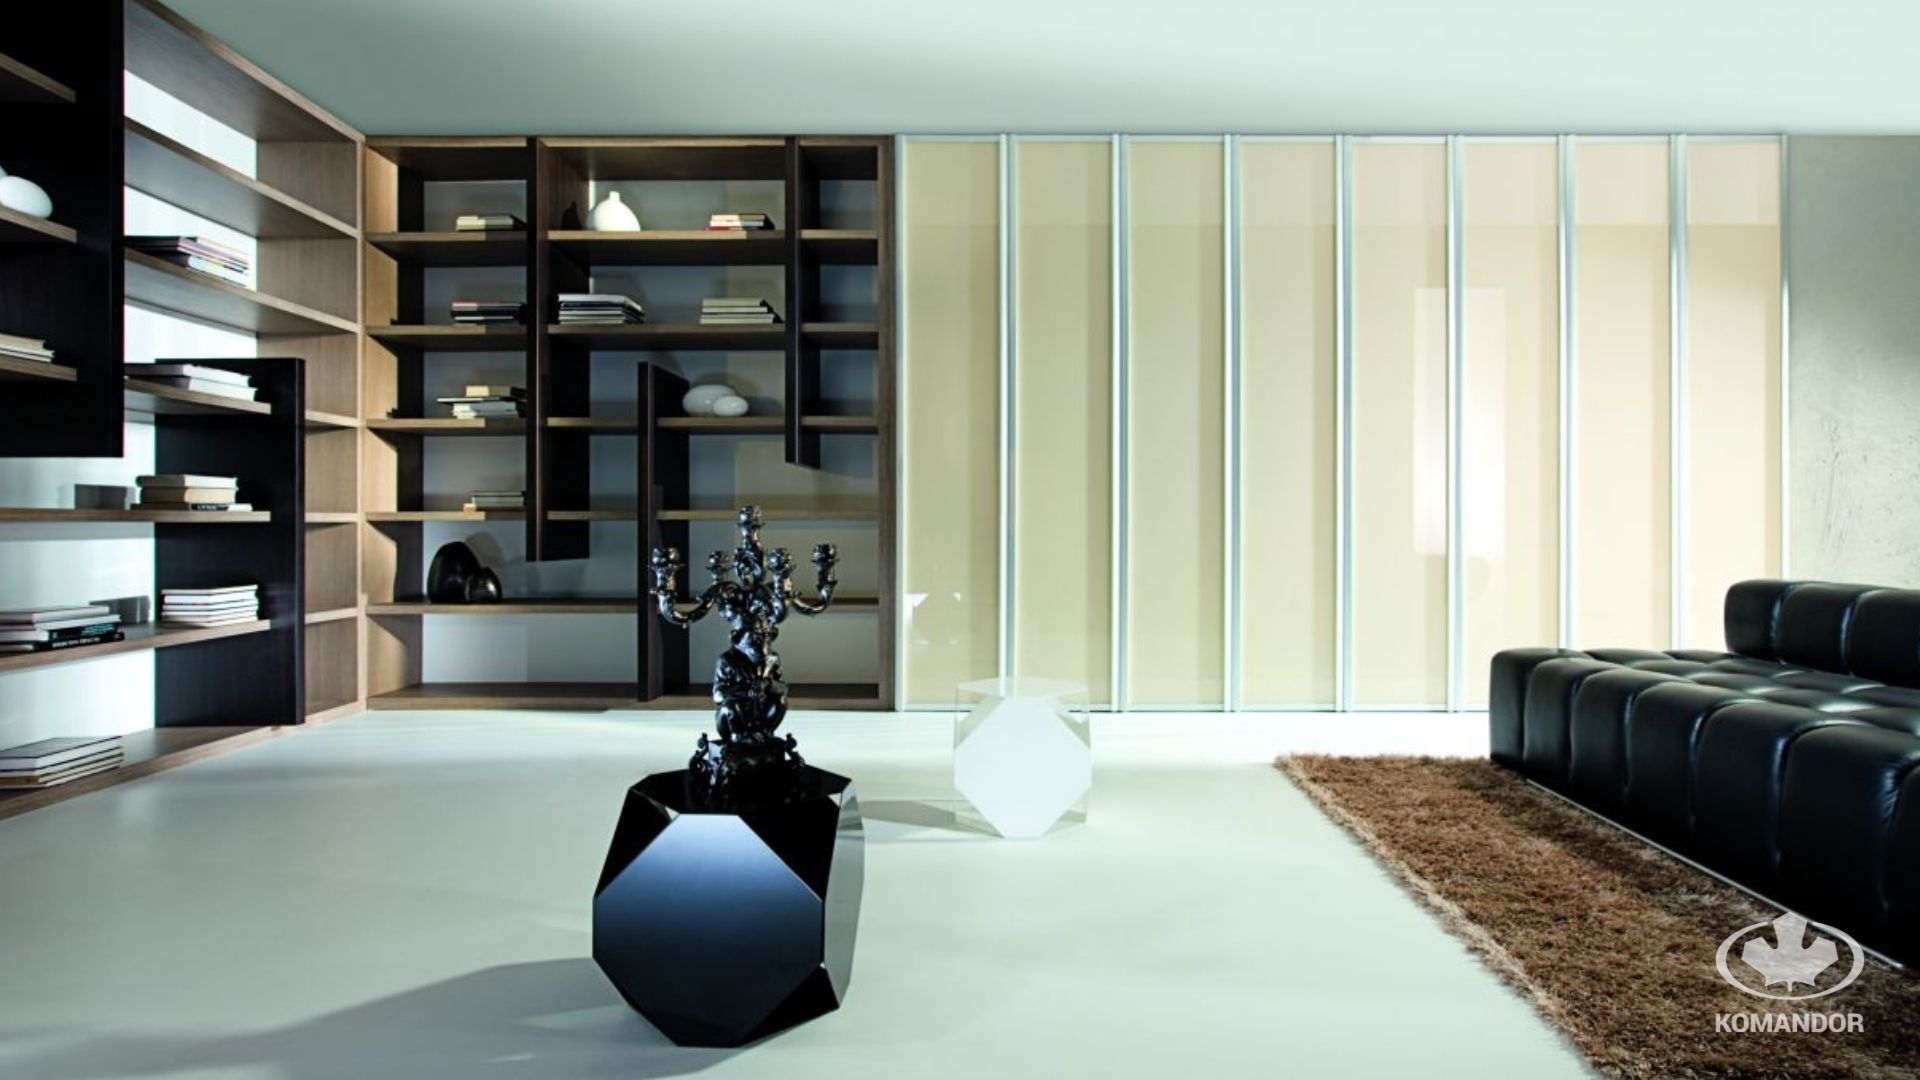 minimalistyczne meble szafa uchylna w salonie komandor